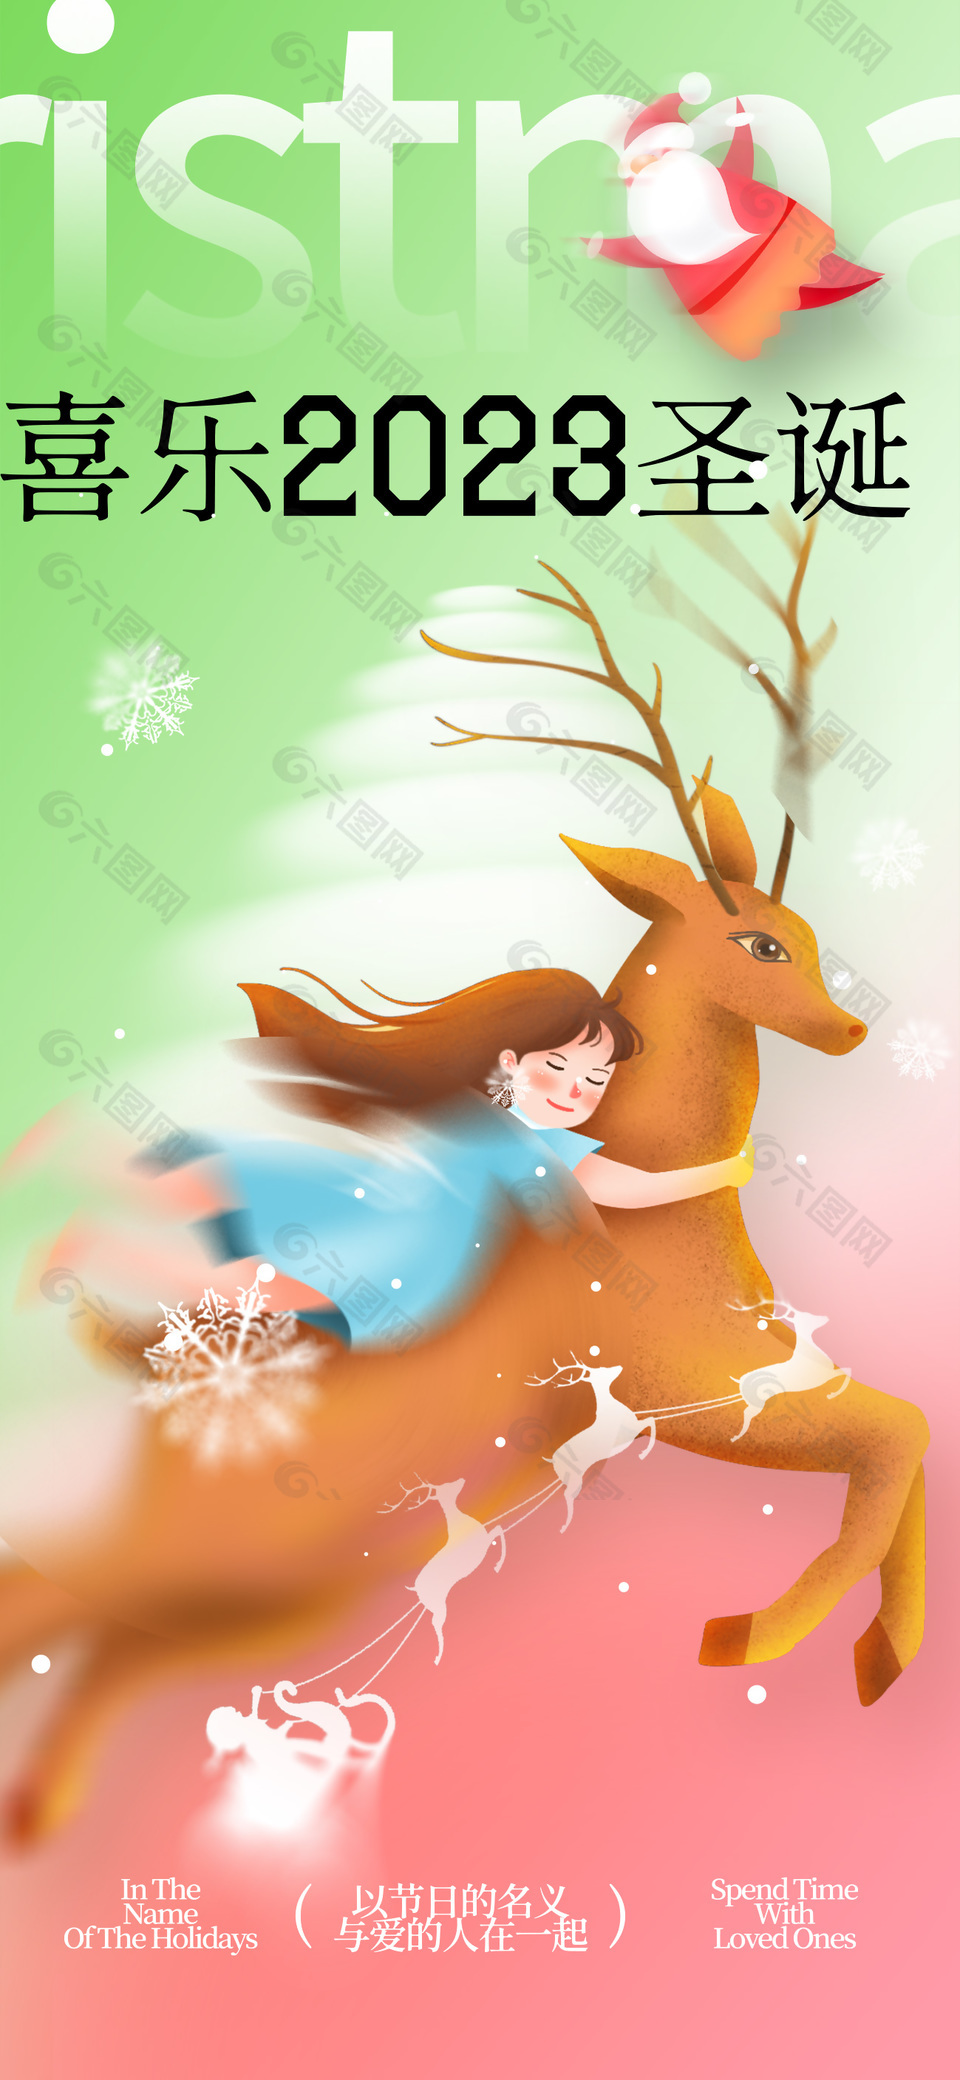 唯美童话风插画圣诞节日海报素材